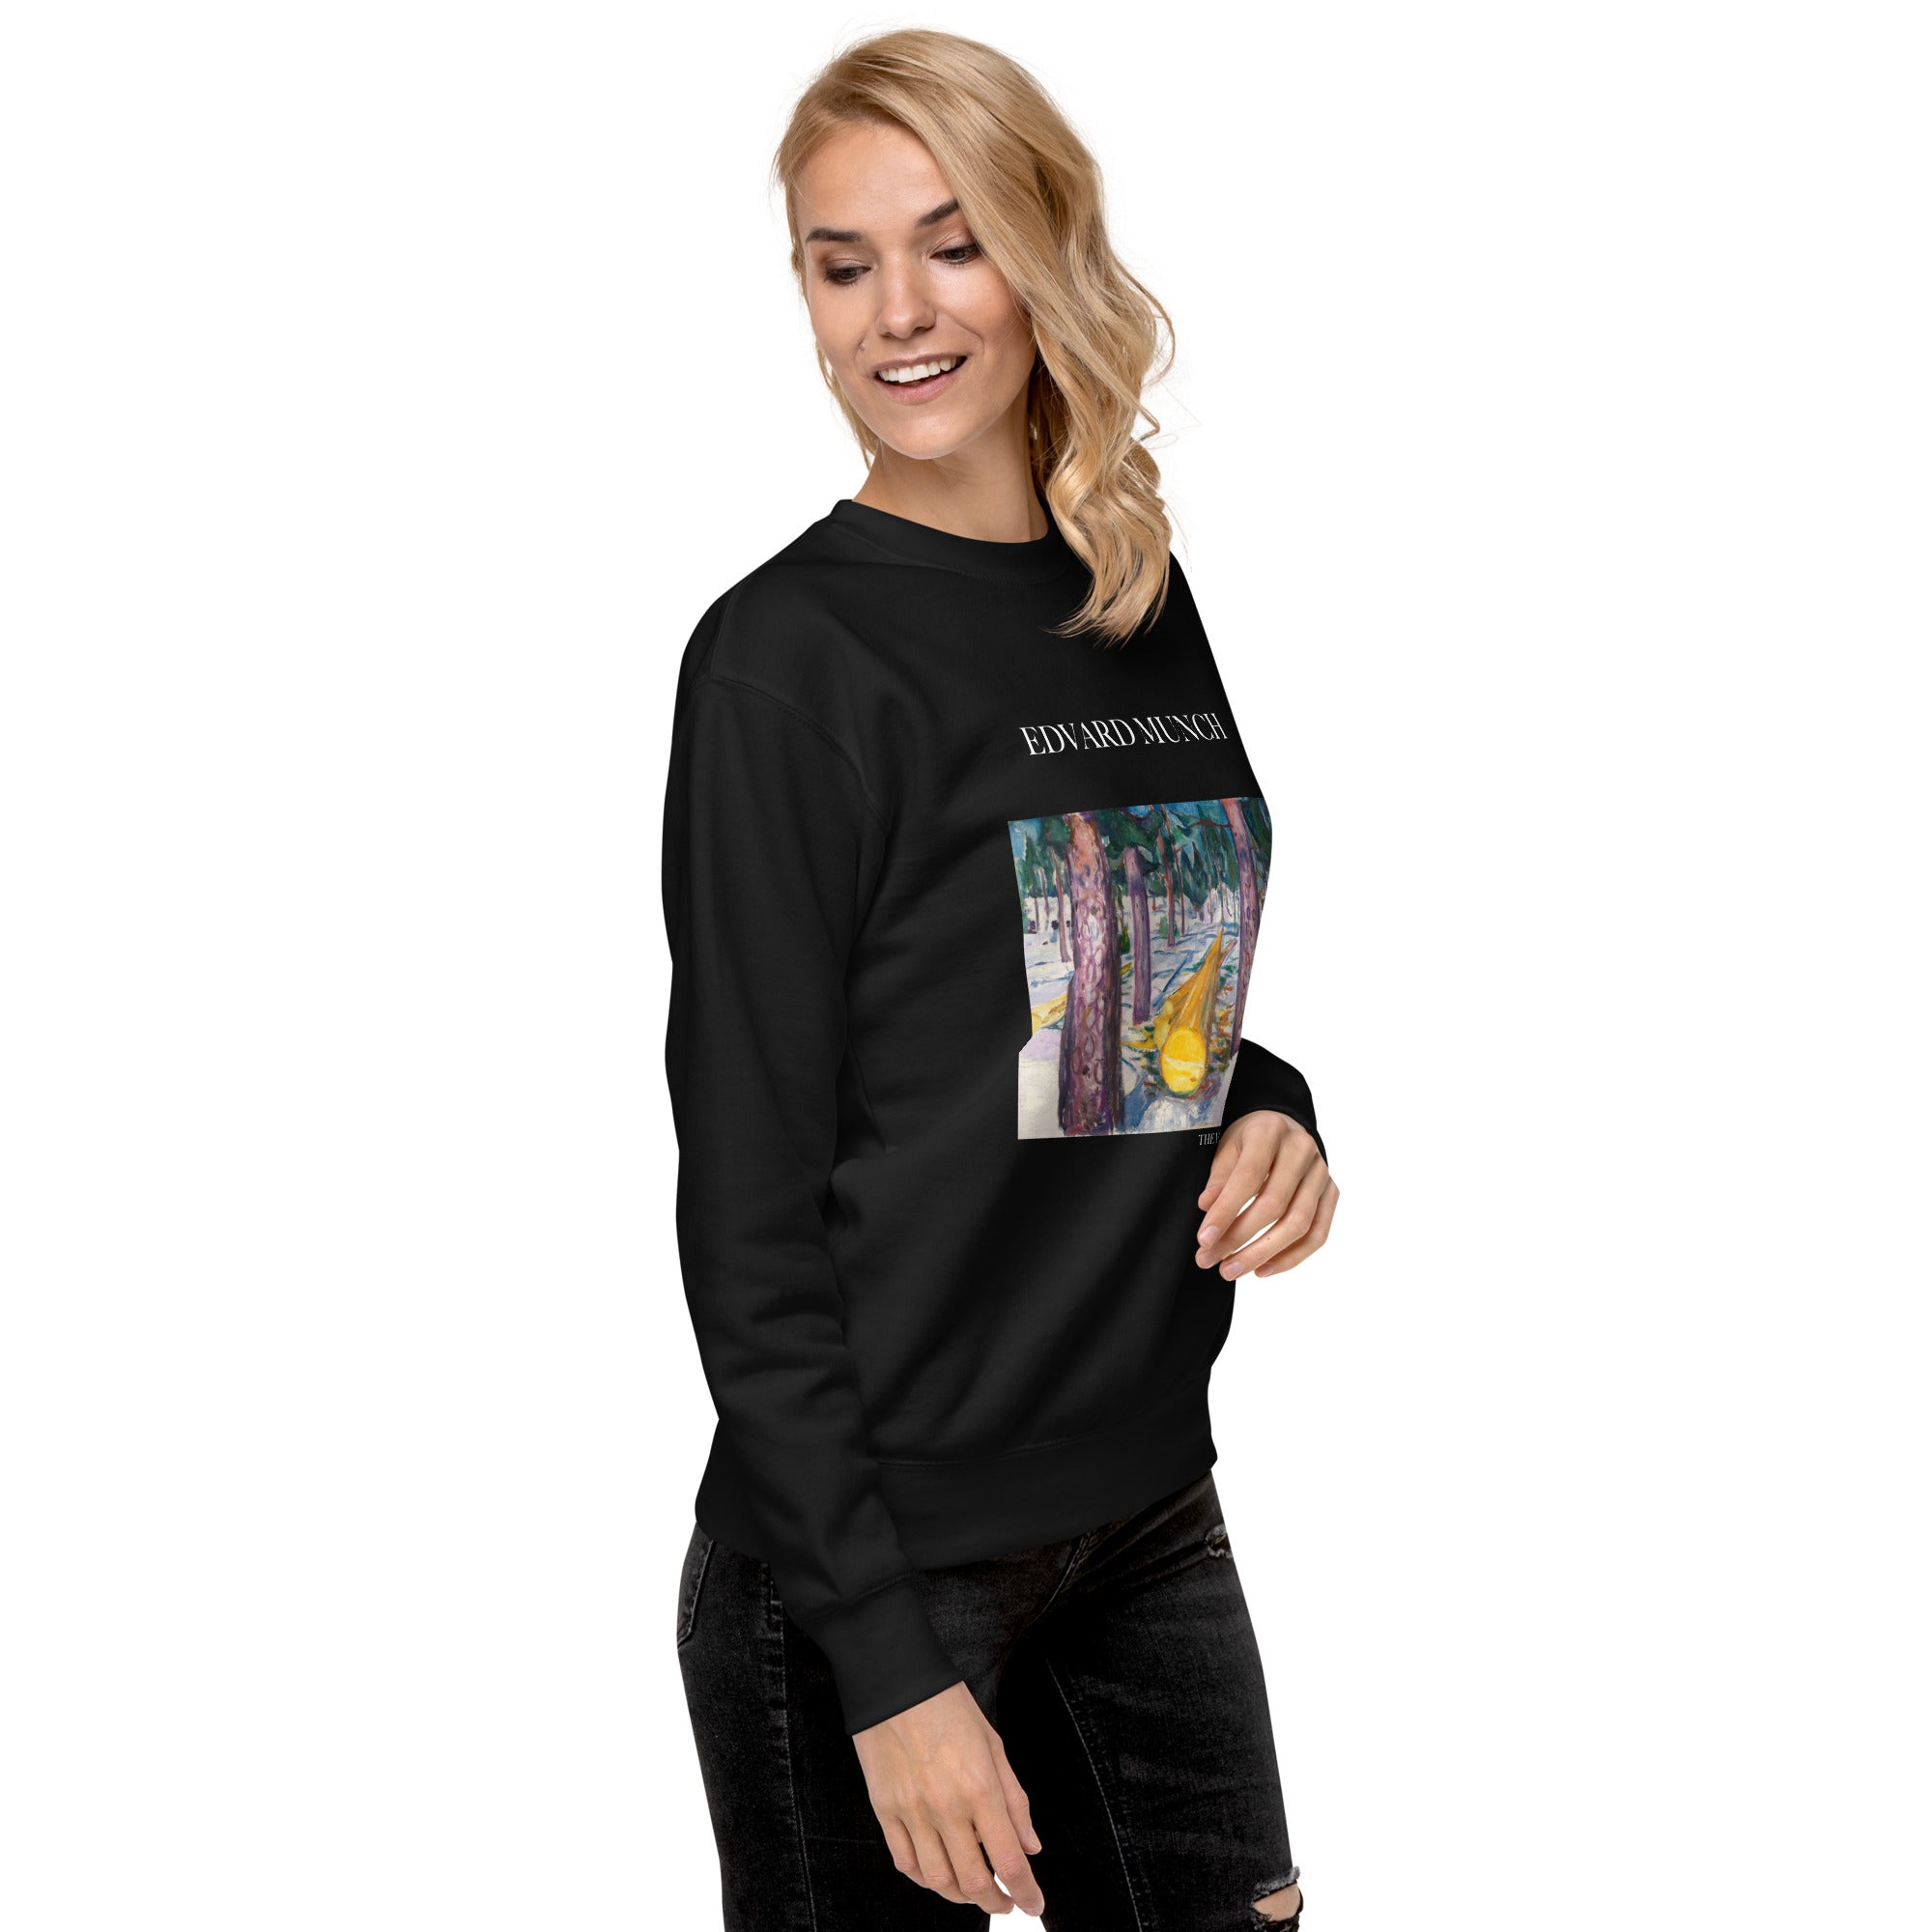 Edvard Munch 'The Yellow Log' Famous Painting Sweatshirt | Unisex Premium Sweatshirt